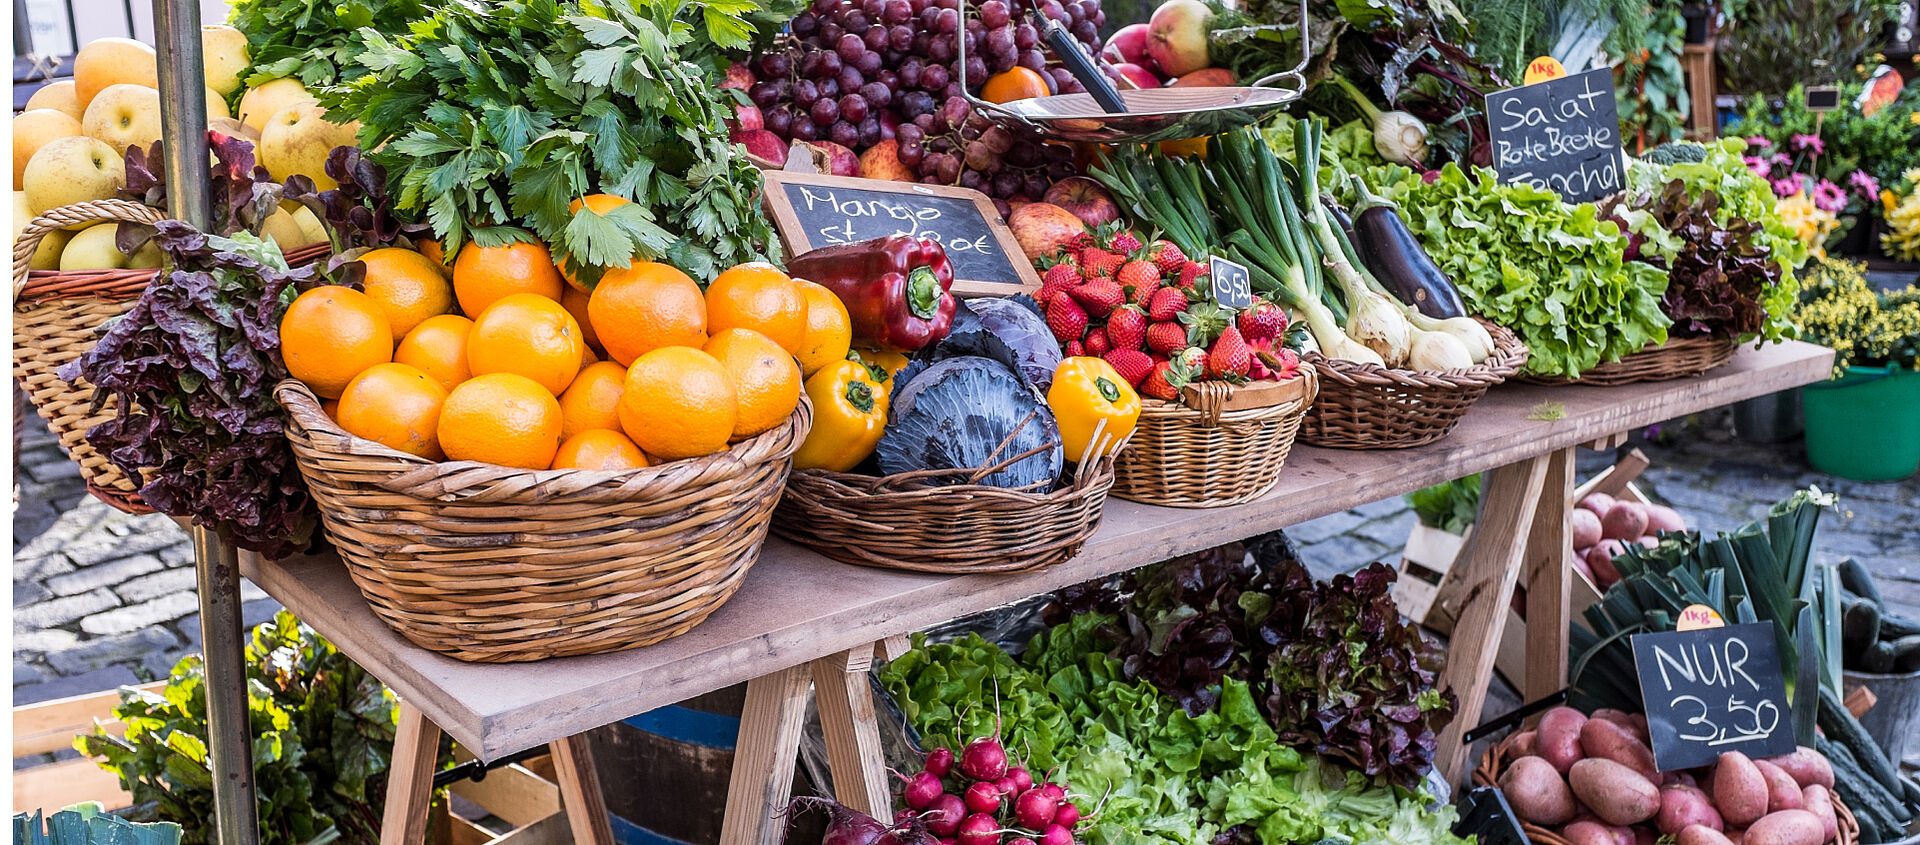 Viel verschiedenes Gemüse und Obst an einem Marktstand